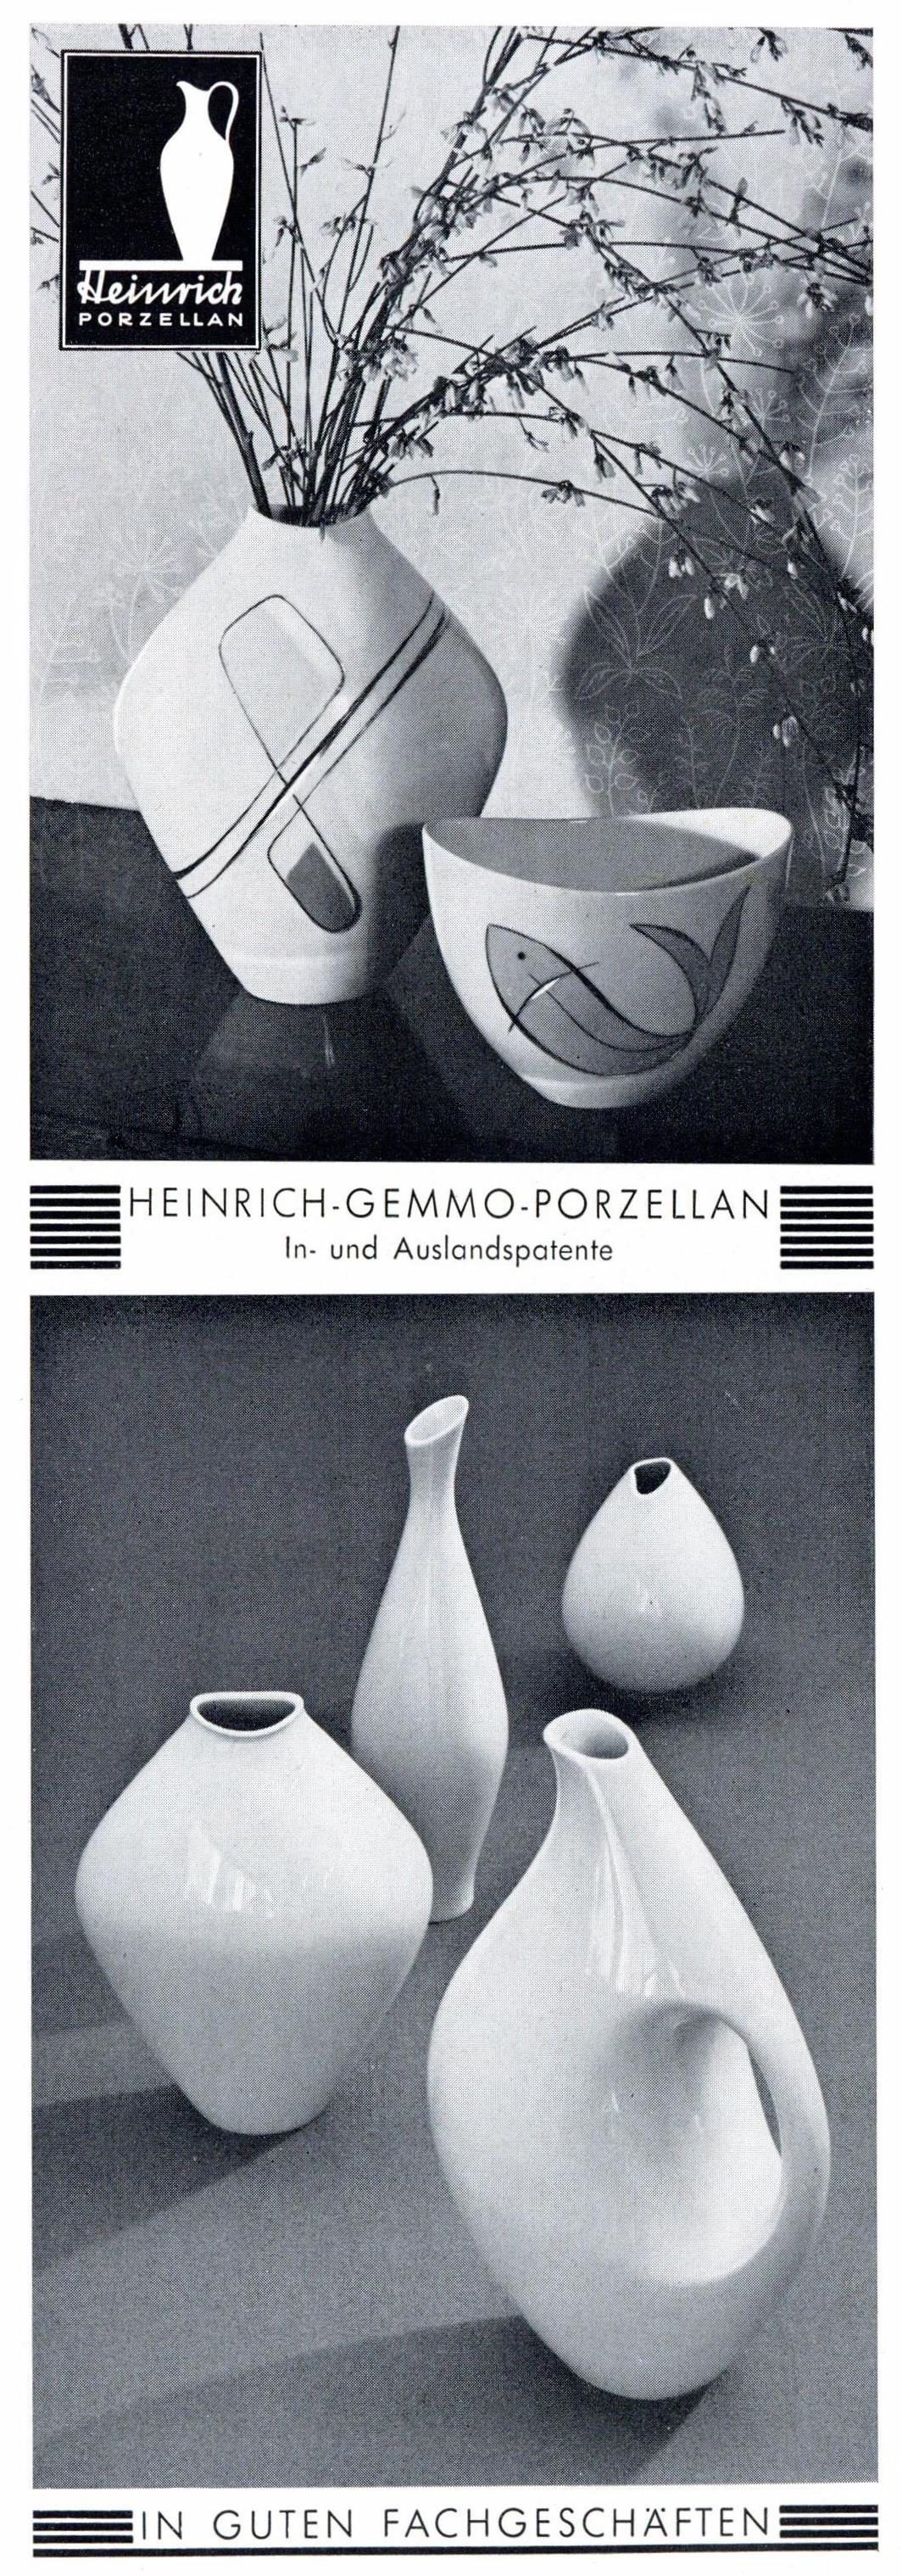 Heinrich-Gemmo.Porzellan 1955 0.jpg